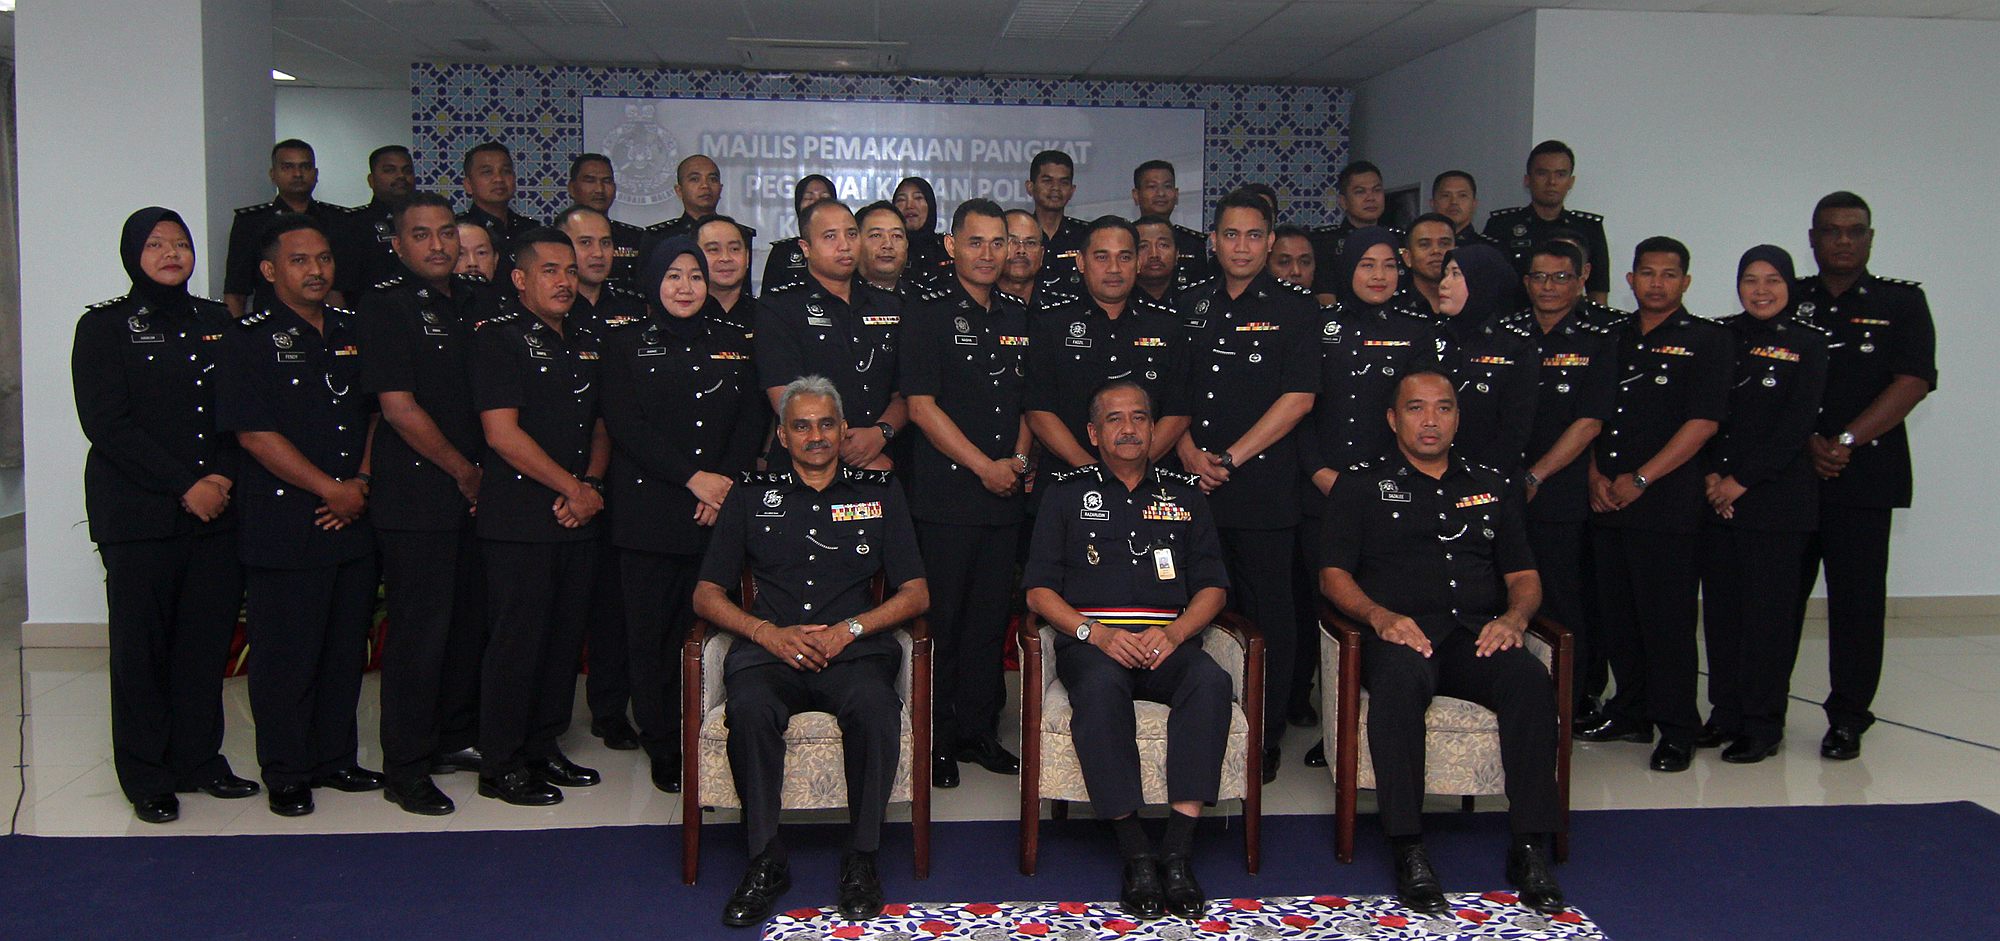 霹州共有43名警长擢升为助理警监（ASP），他们获得总警长纳沙鲁丁（前排中）主持升阶仪式后，拍照留念；前排左为苏雷斯。